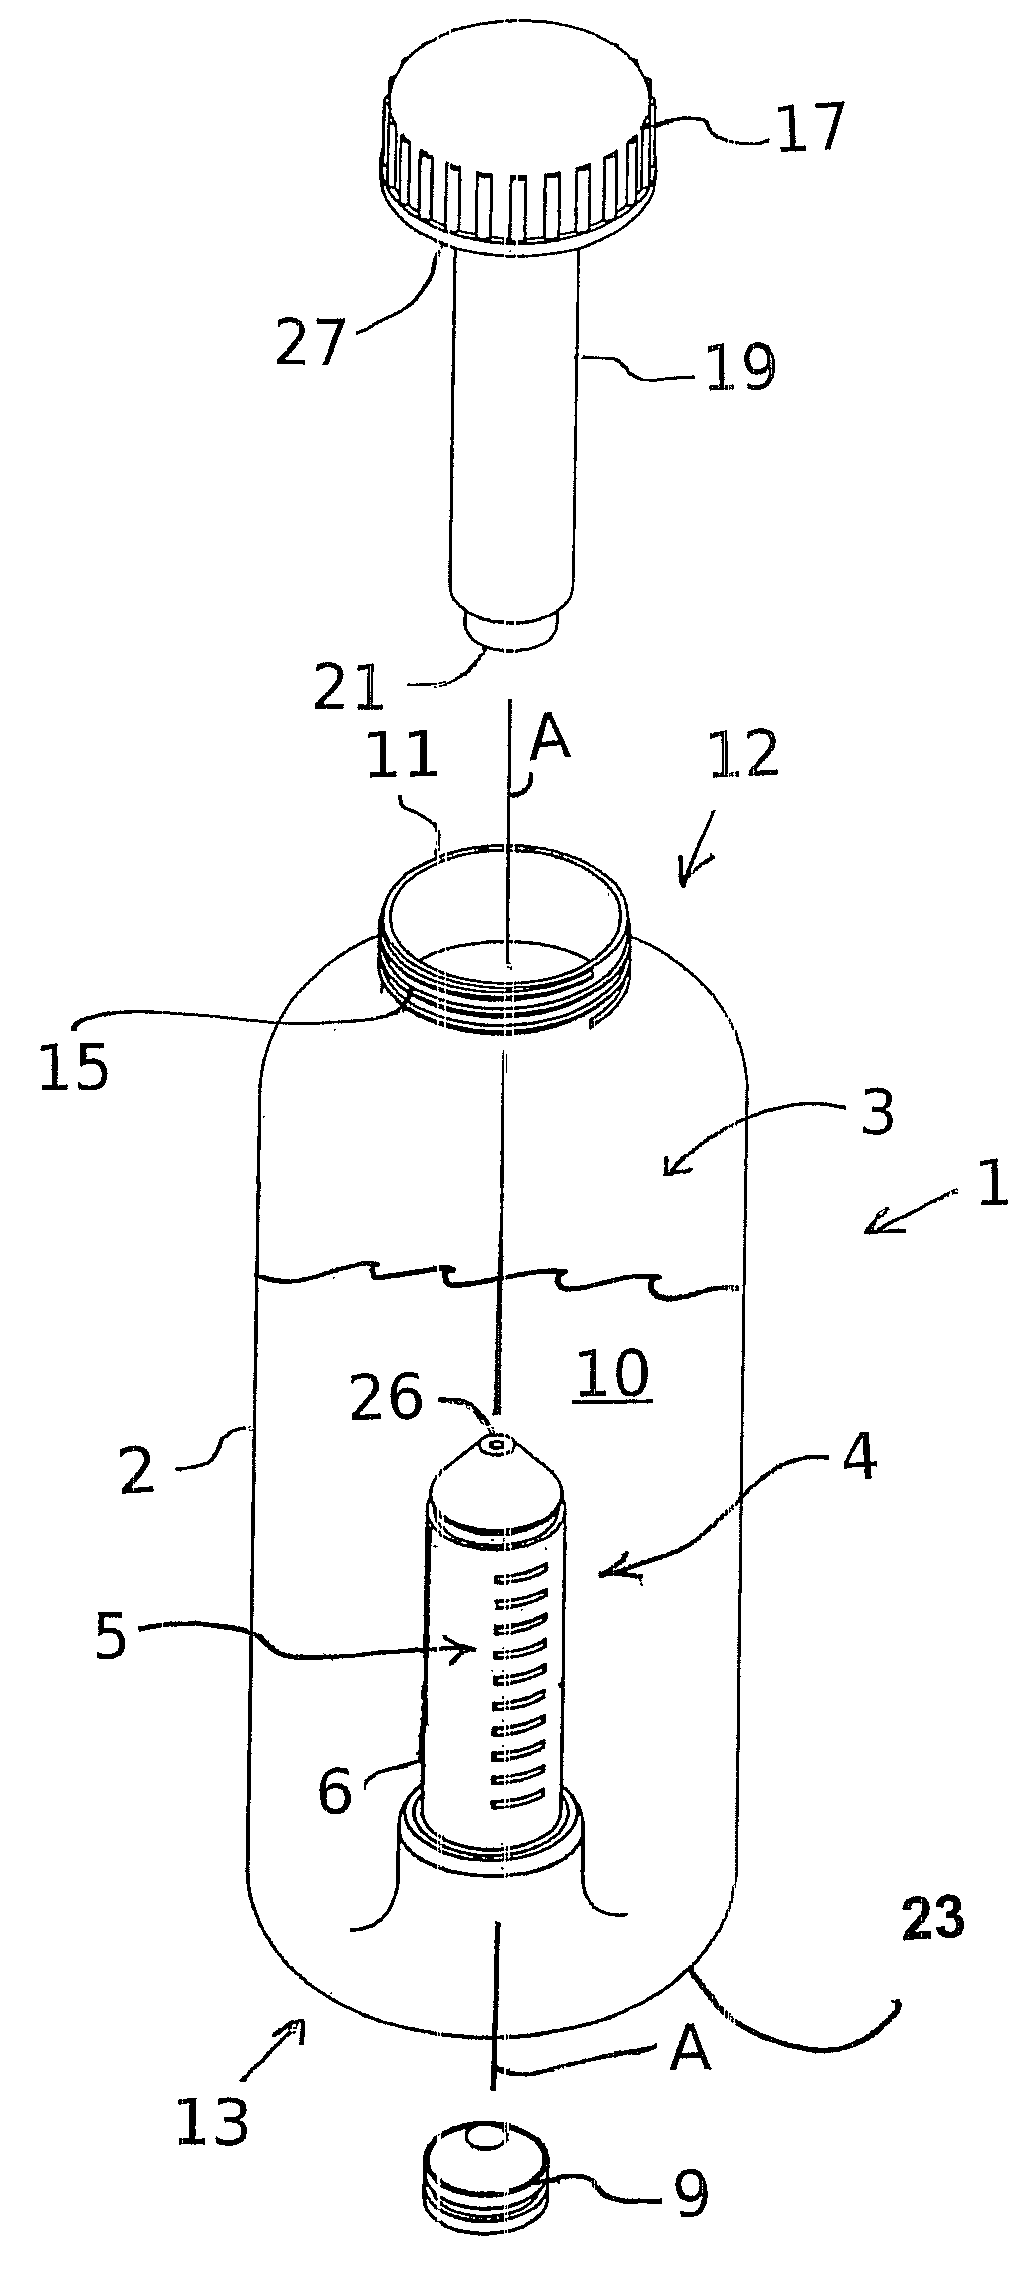 Liquid container with additive dispenser